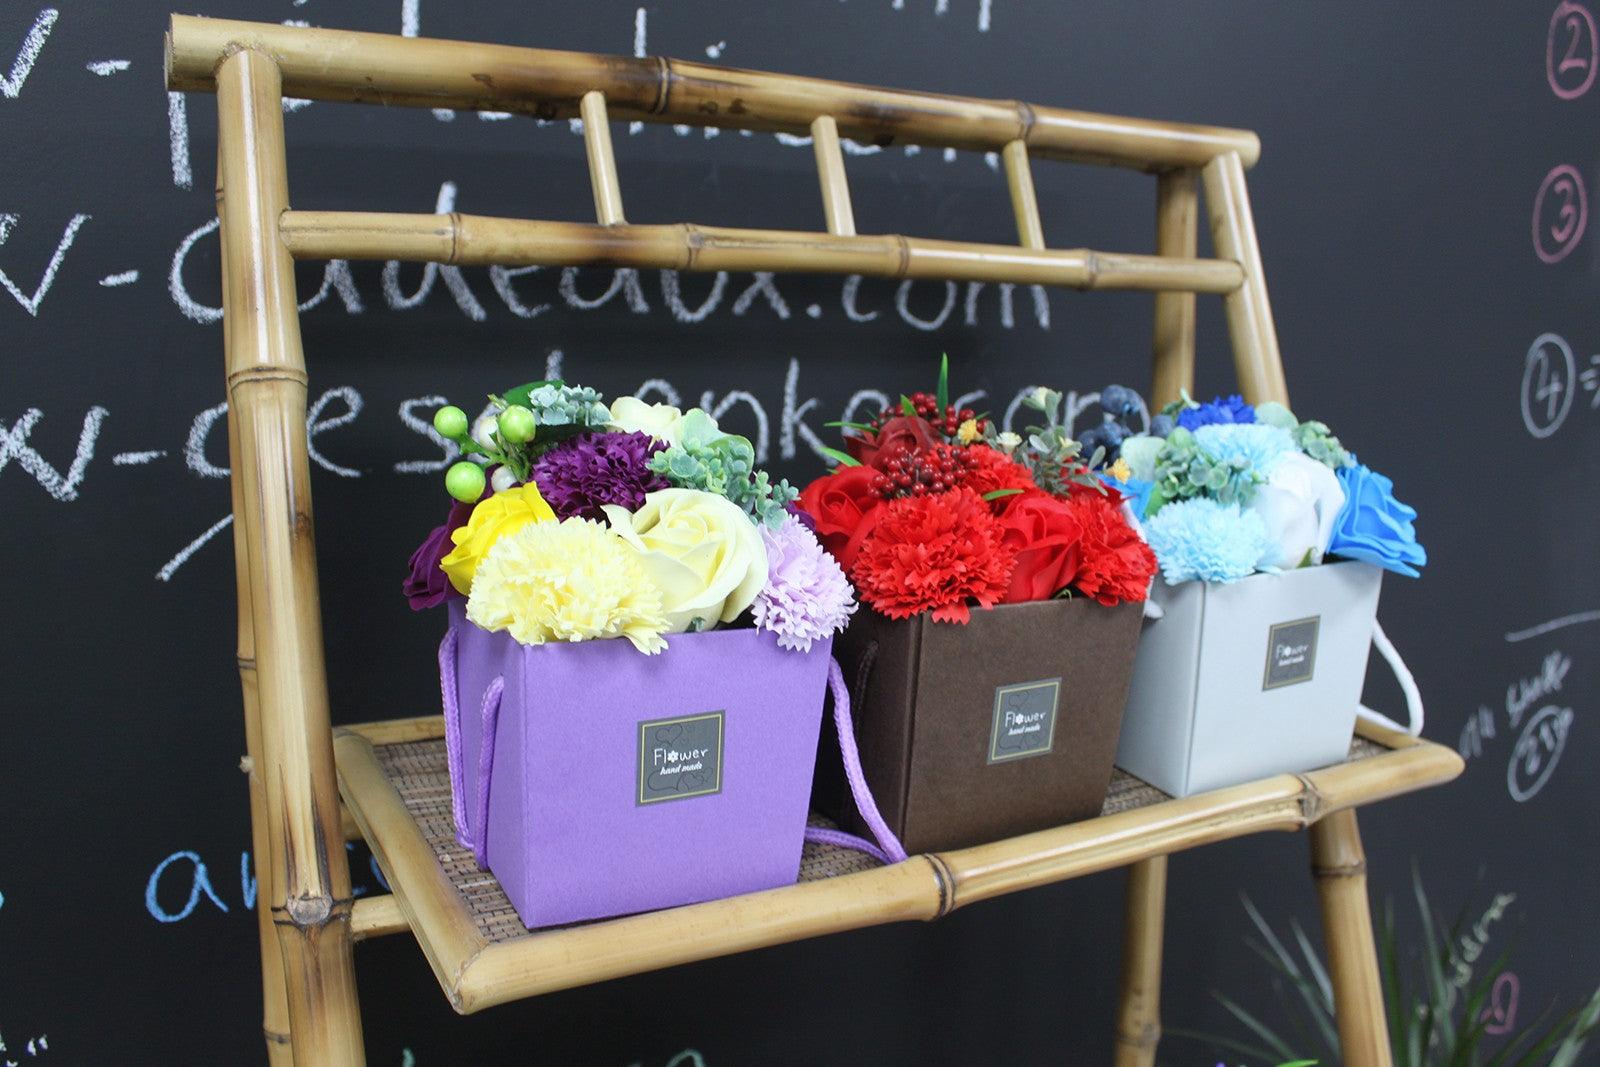 Soap Flower Bouquet - Blue Wedding - Charming Spaces